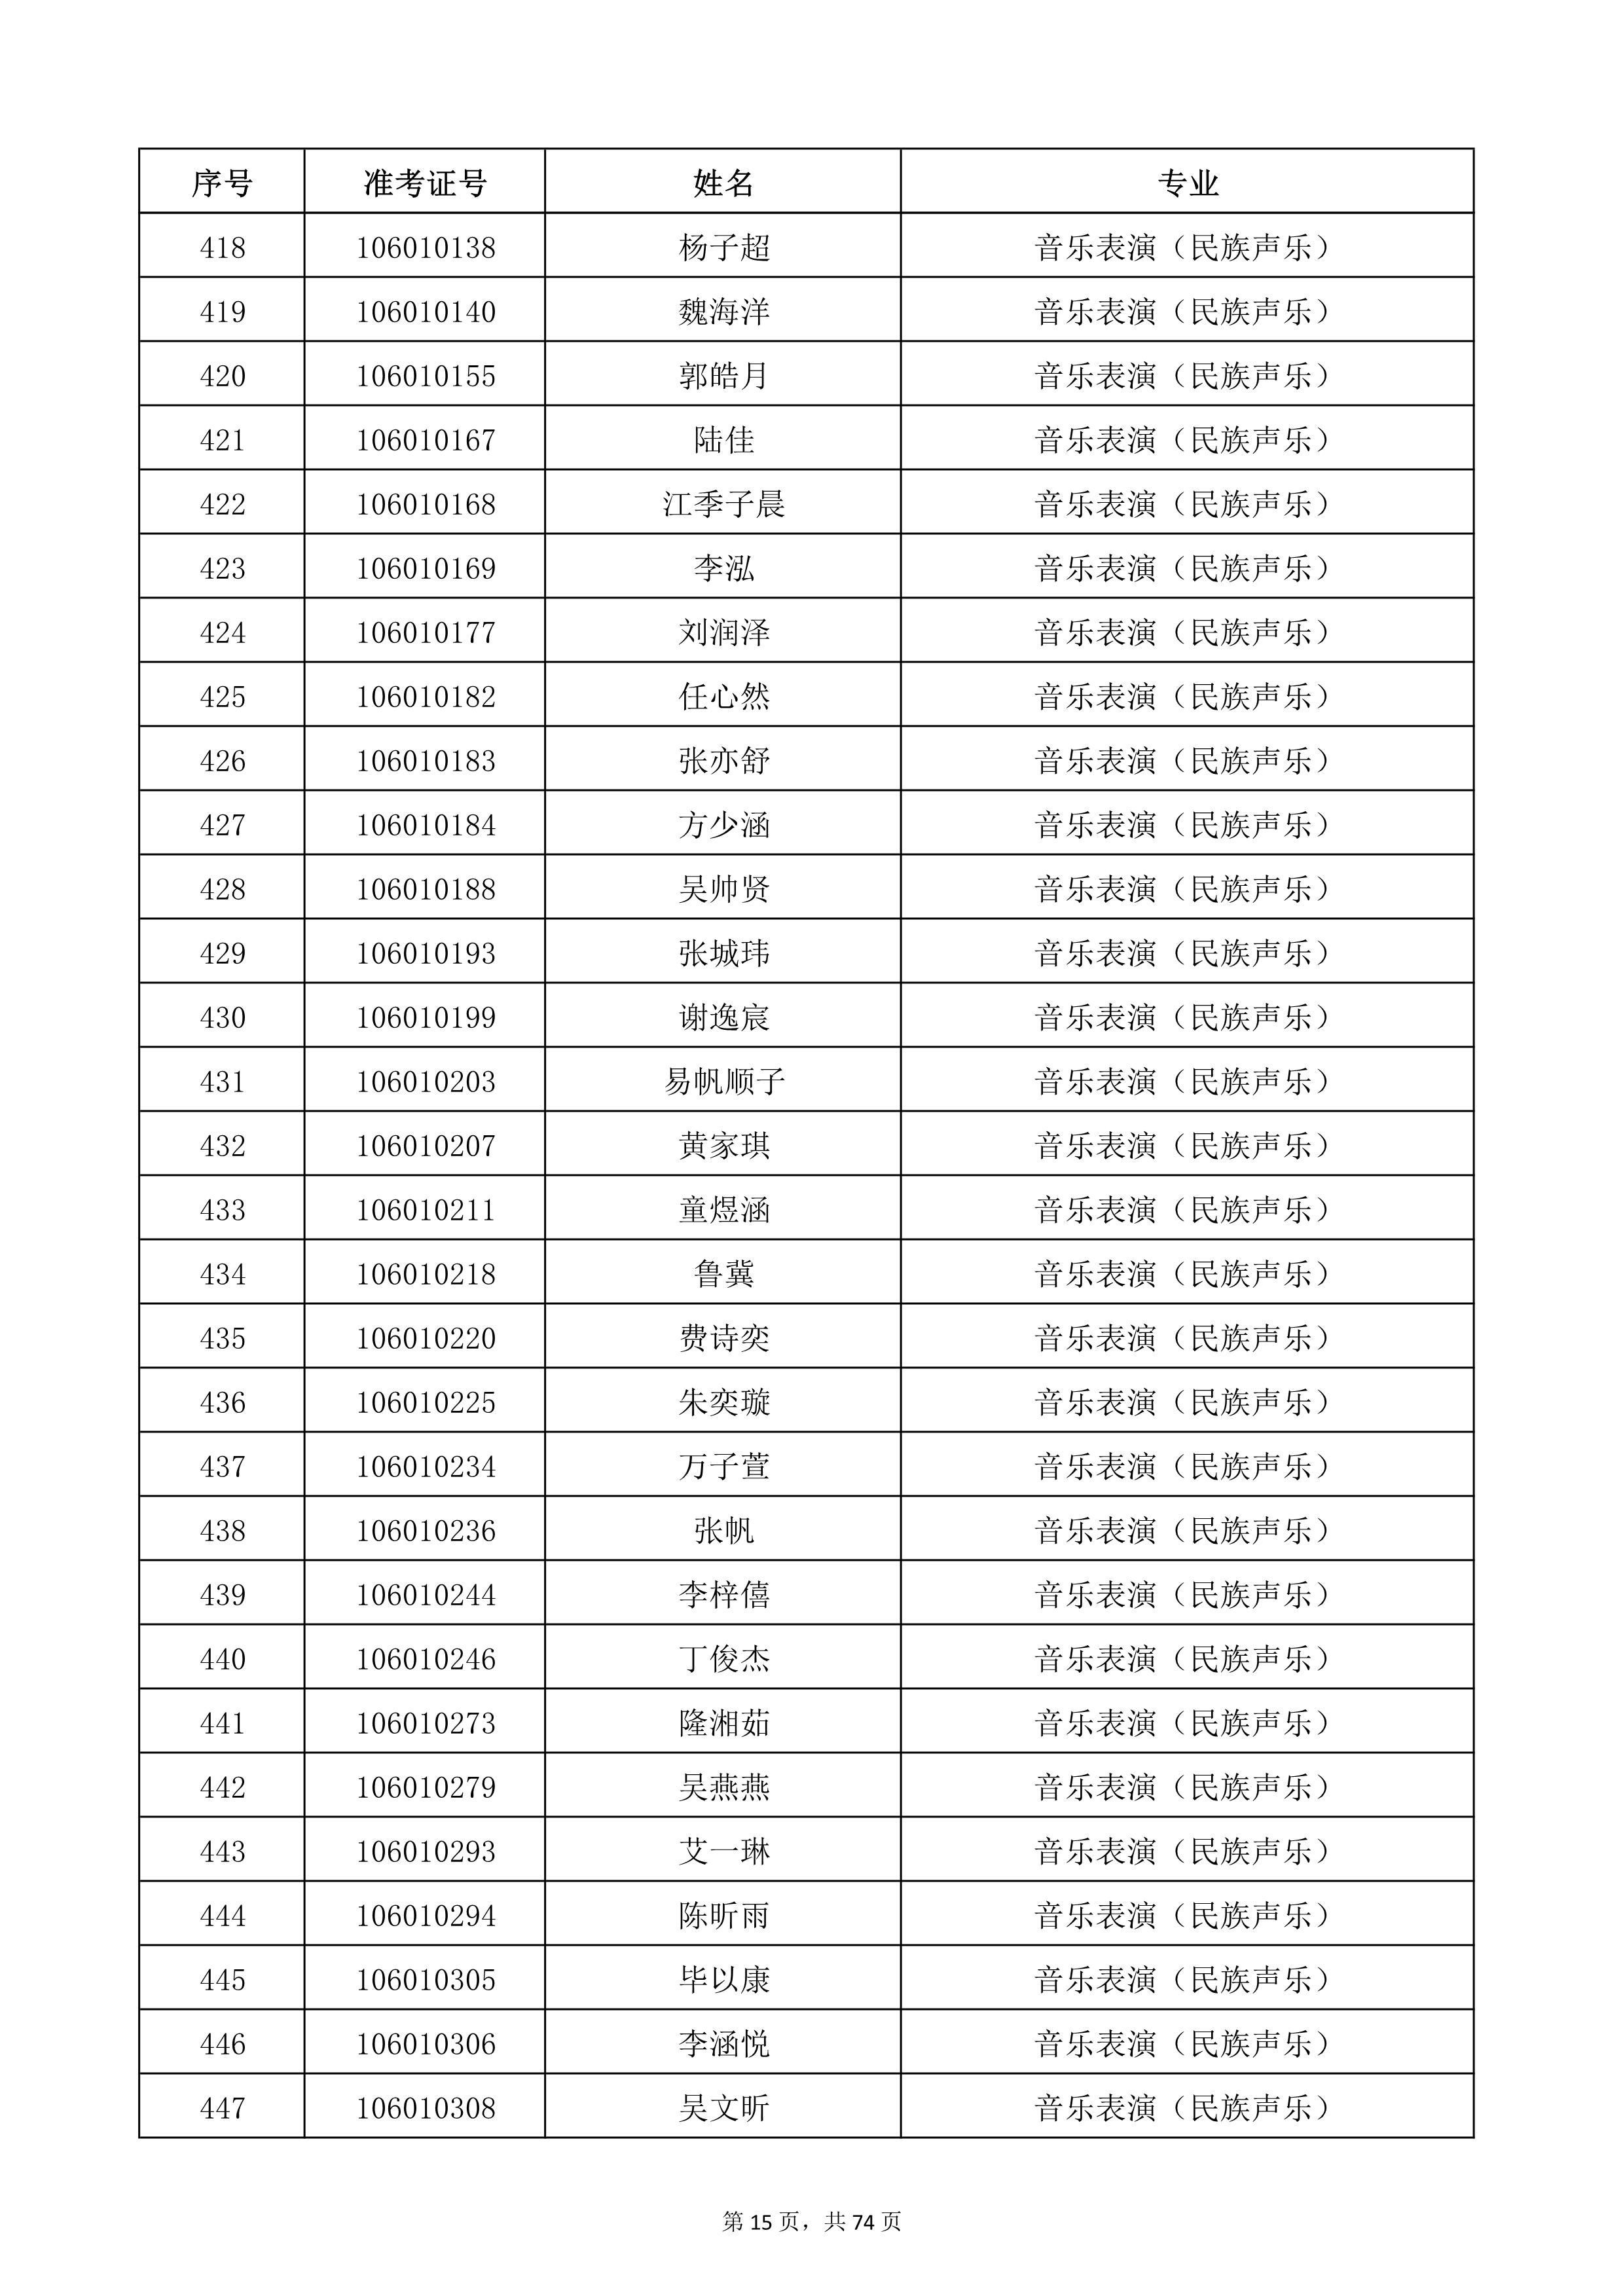 天津音乐学院2022年本科招生考试复试名单_15.jpg